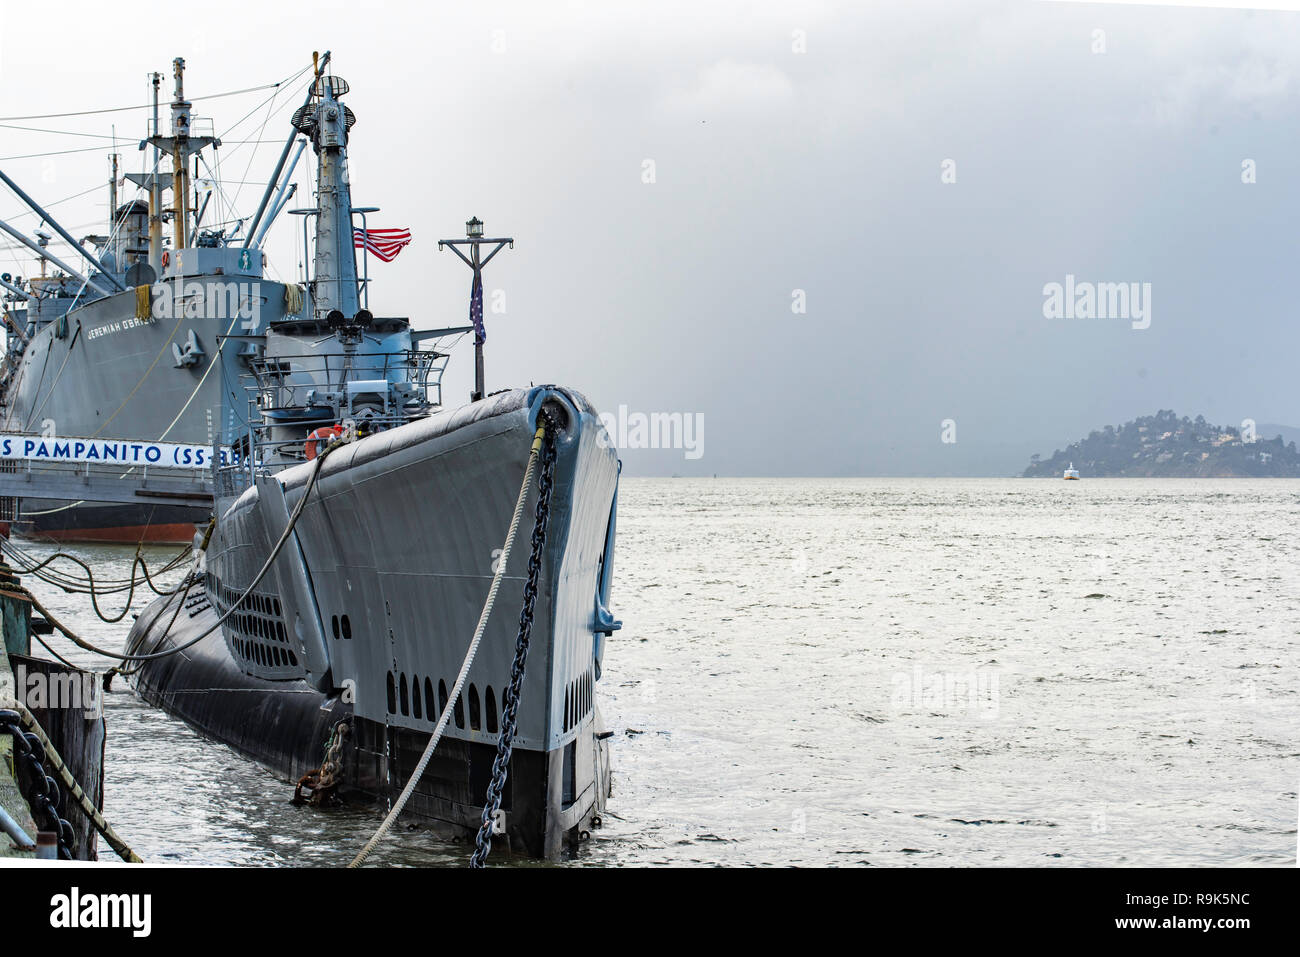 Das U-Boot USS Pampanito im Vordergrund und am hinteren Liberty Ship USS Jeremiah O'Brien sowohl in San Francisco Hafen am Fisherman's Wharf Stockfoto